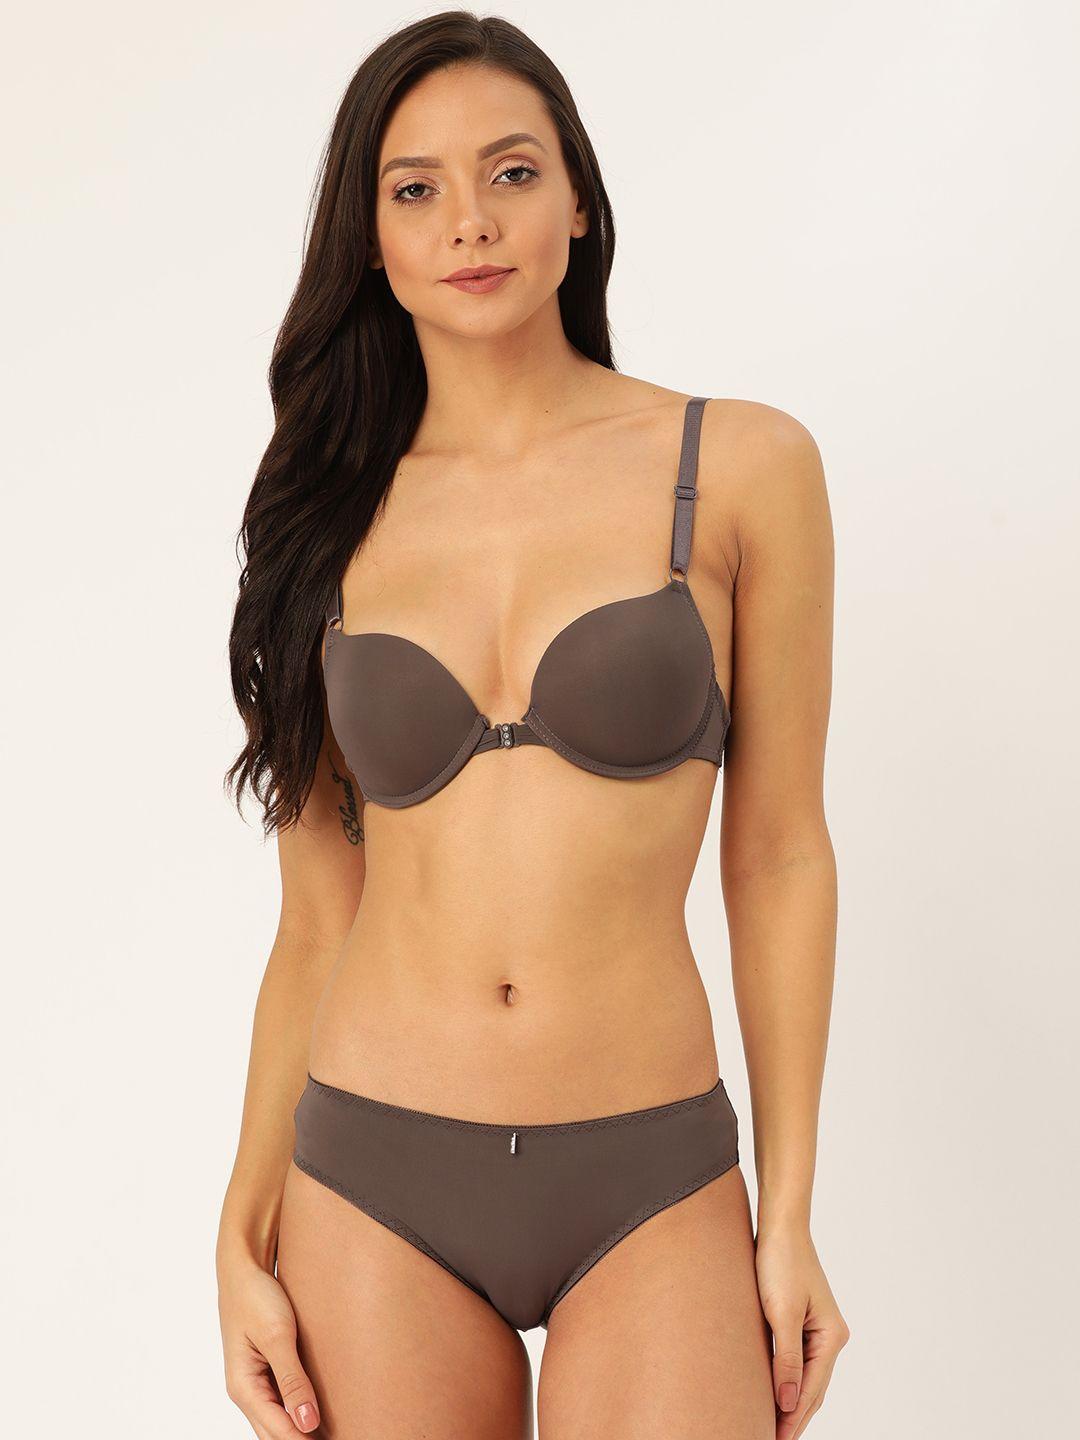 makclan women charcoal grey solid padded front-open lingerie set k27019la